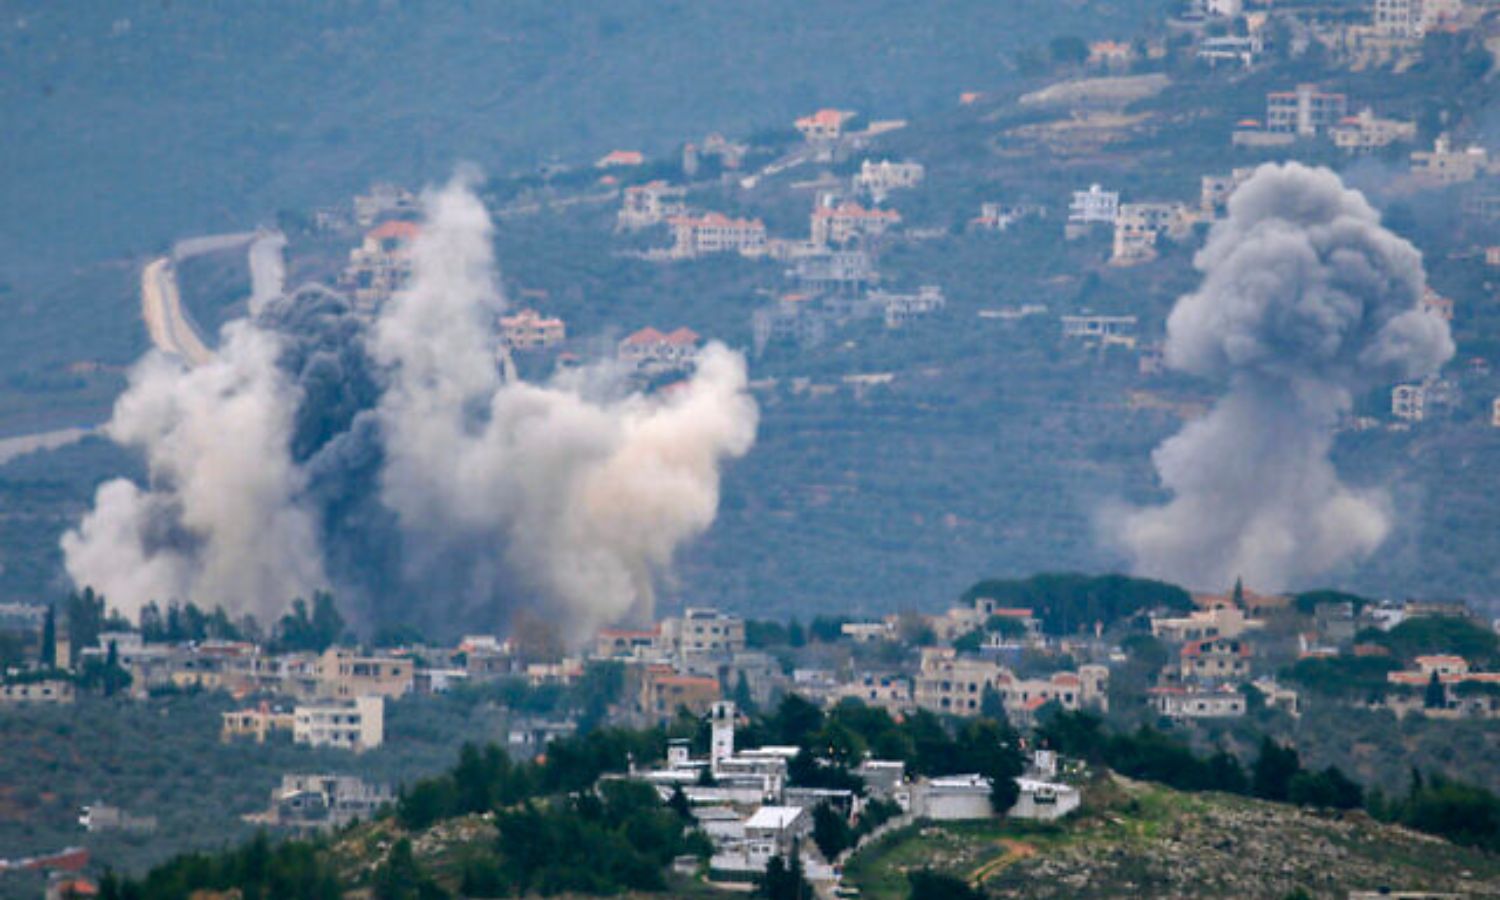 تصاعد الدخان نتيجة قصف إسرائيلي على القرى الحدودية اللبنانية مع فلسطين المحتلة 21 من كانون الأول 2023 (AFP)